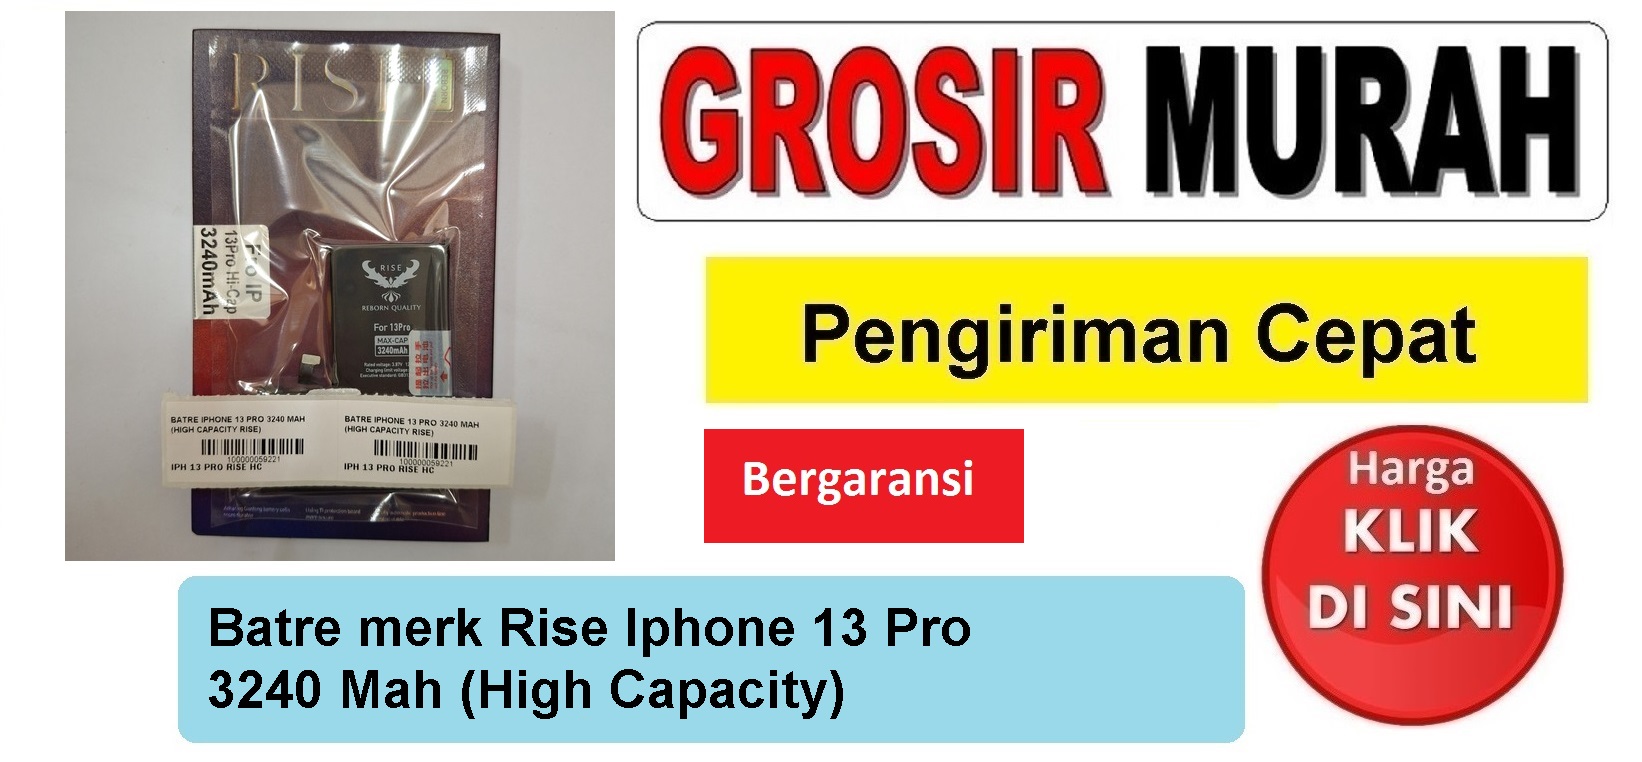 Batre merk Rise Iphone 13 Pro 3240 Mah (High Capacity) Baterai Battery Bergaransi Batere